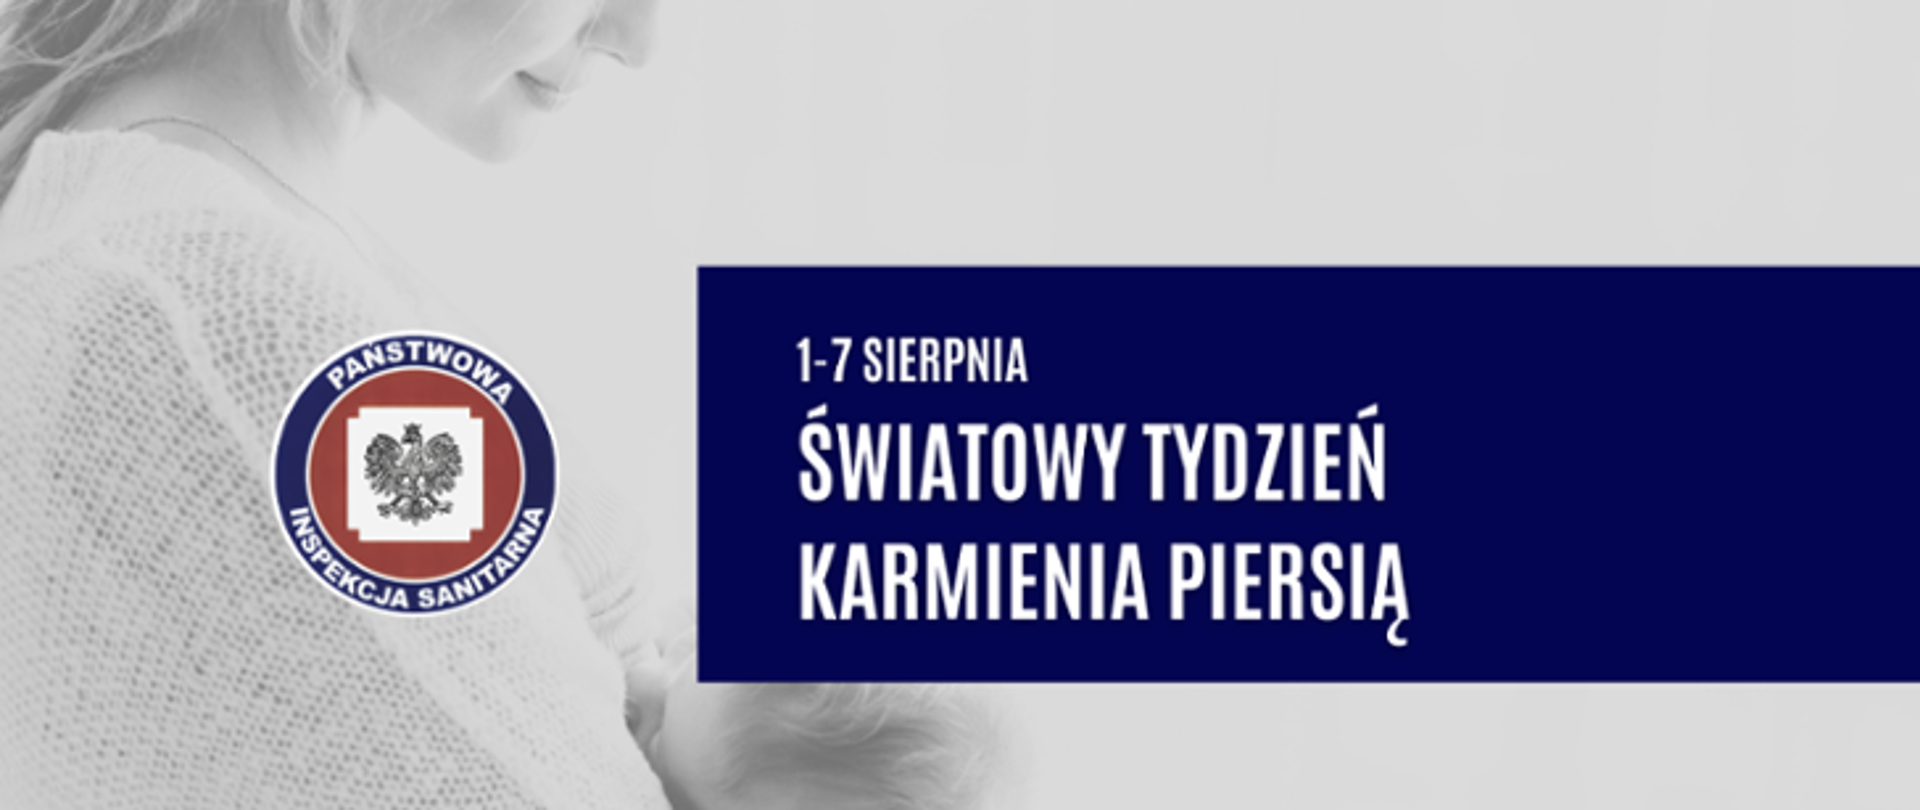 Tydzień_karmienia_piersią